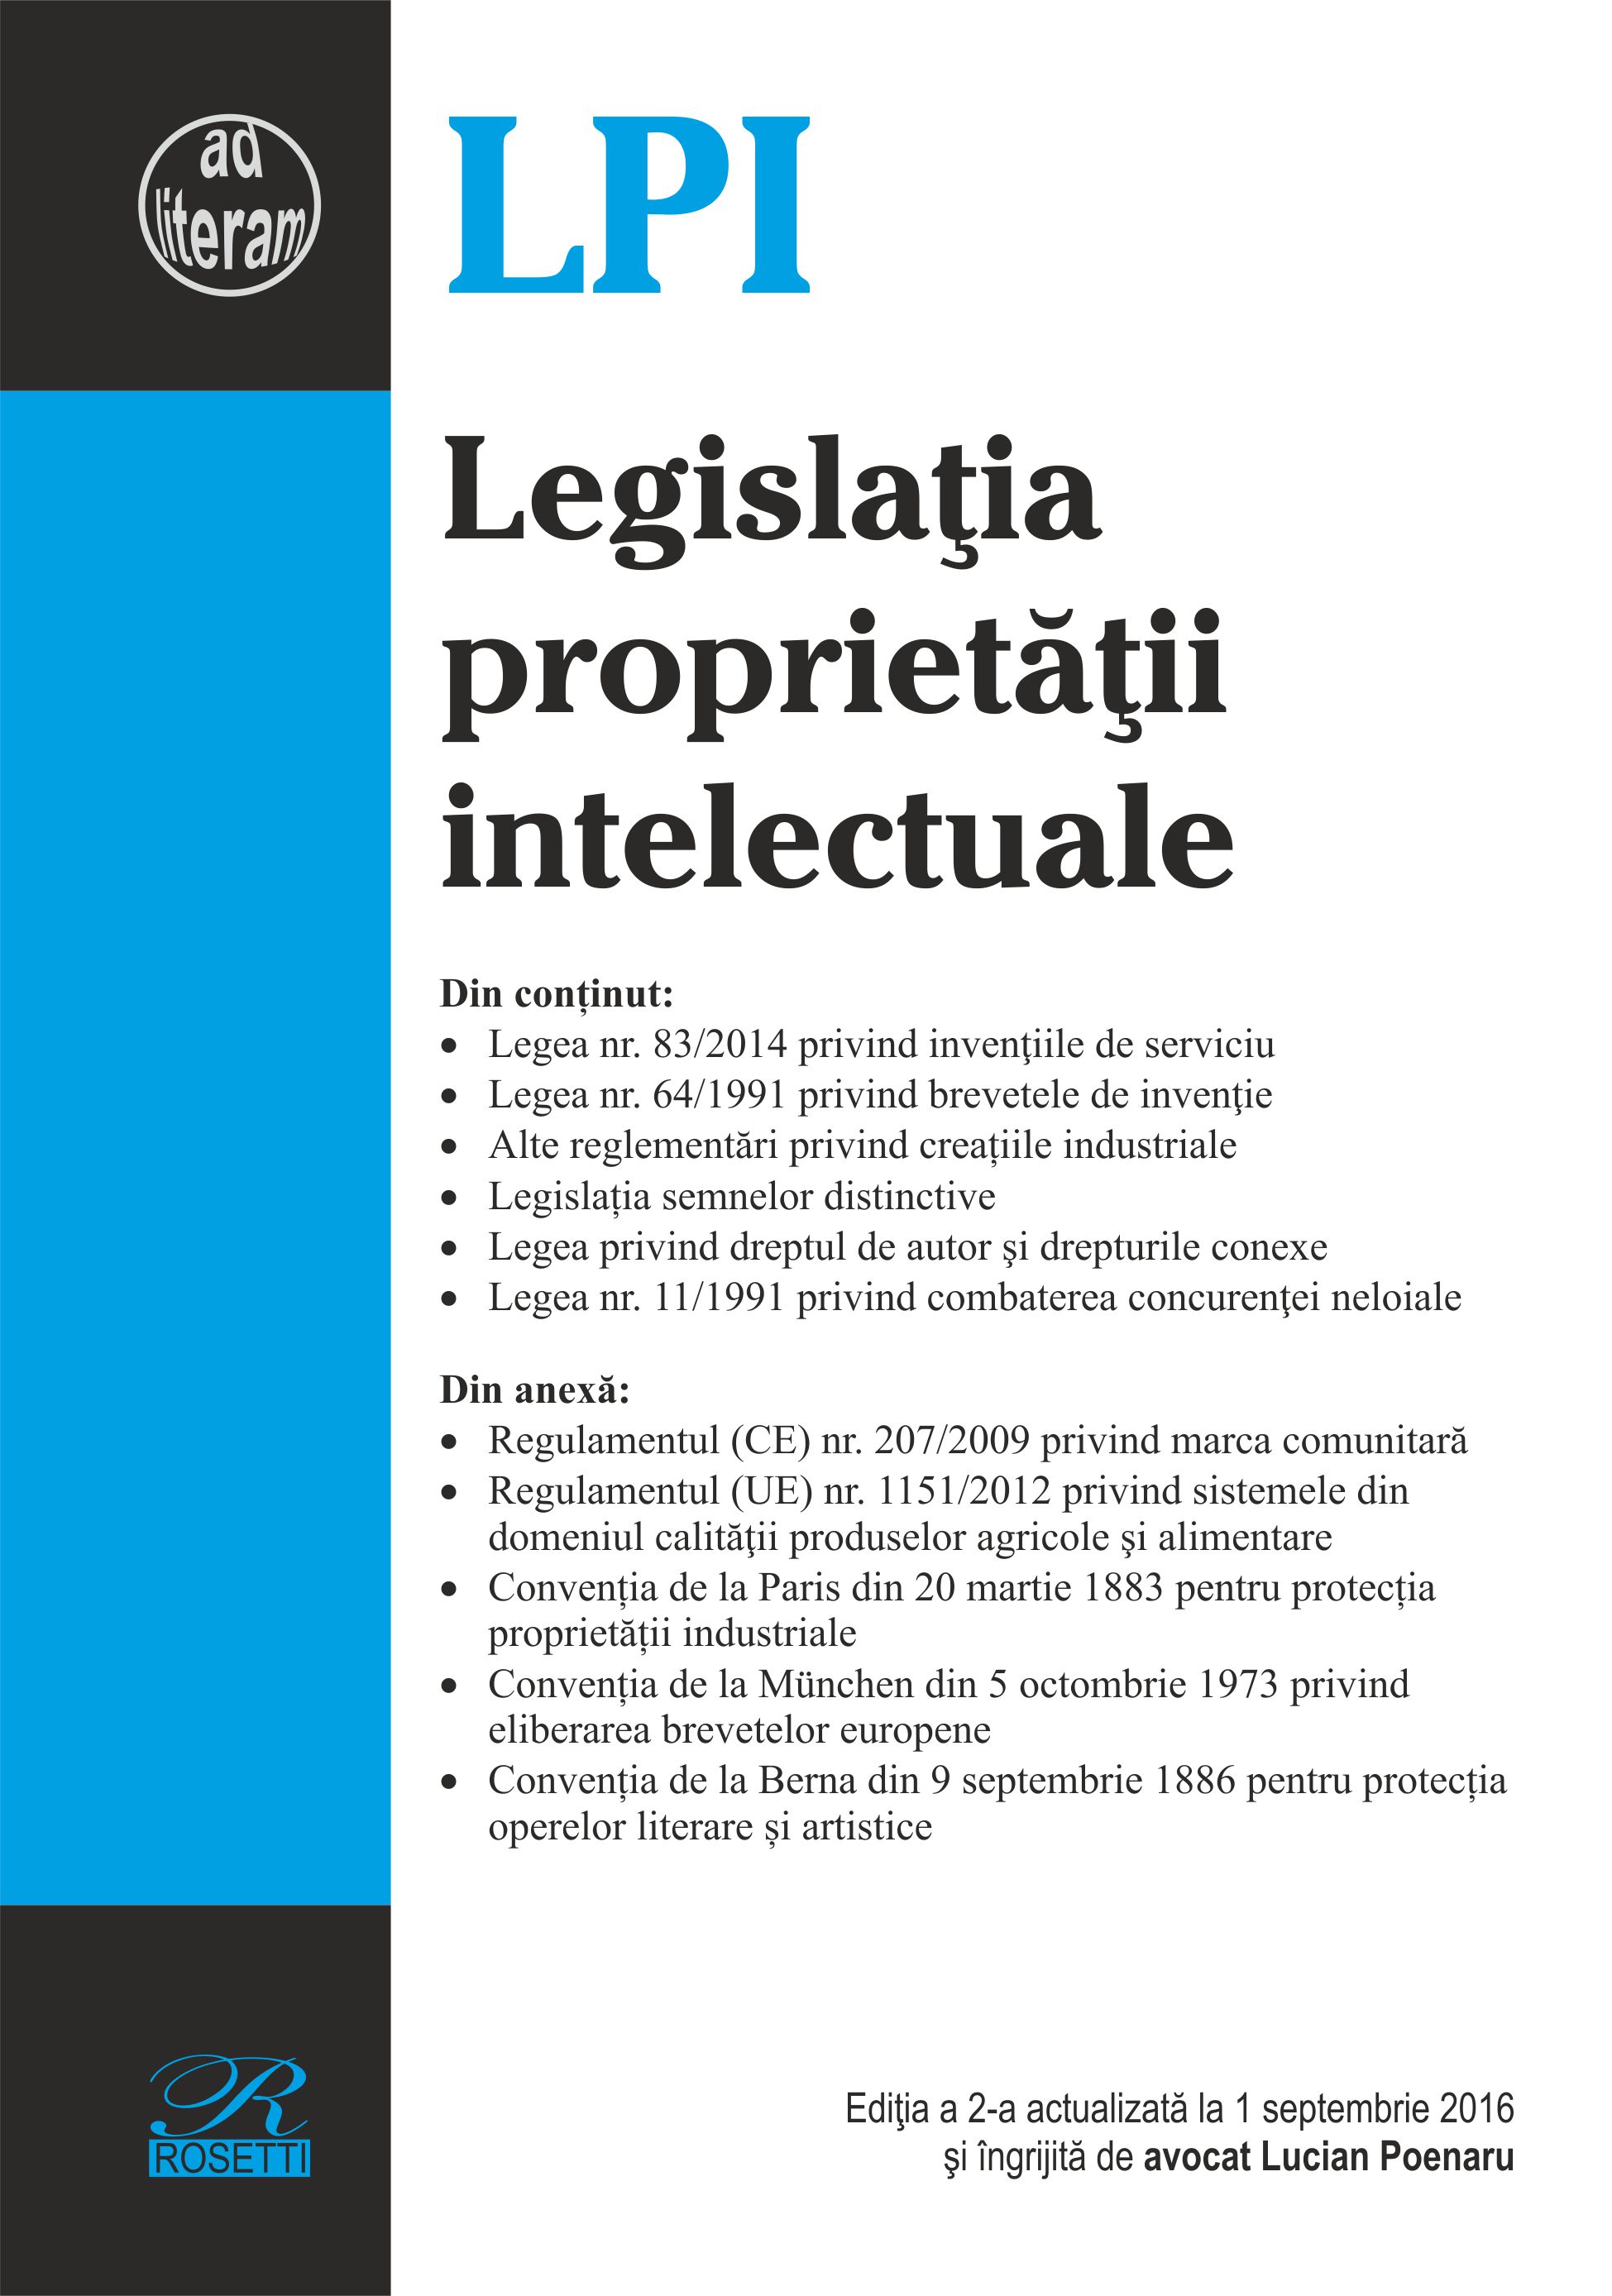 Legislatia proprietatii intelectuale act. 1 septembrie 2016